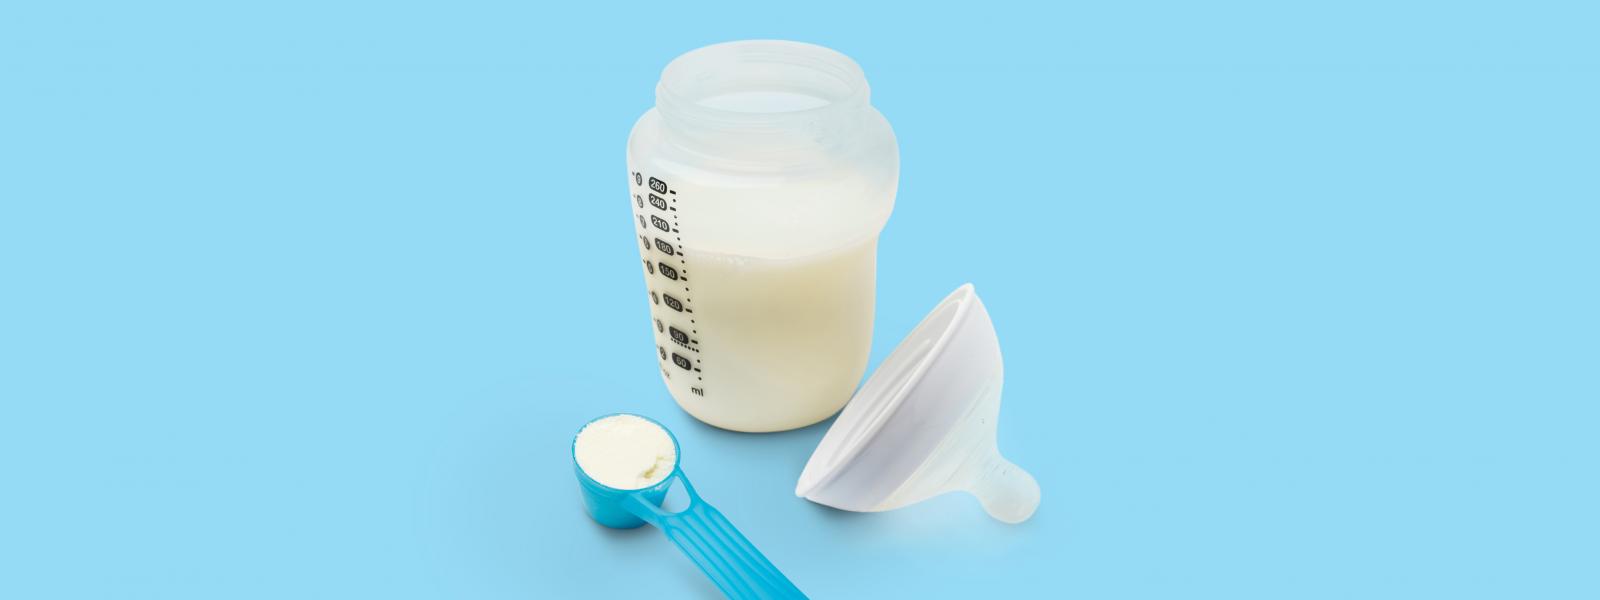 Baby bottle of milk alongside a scoop of infant nutrition formula